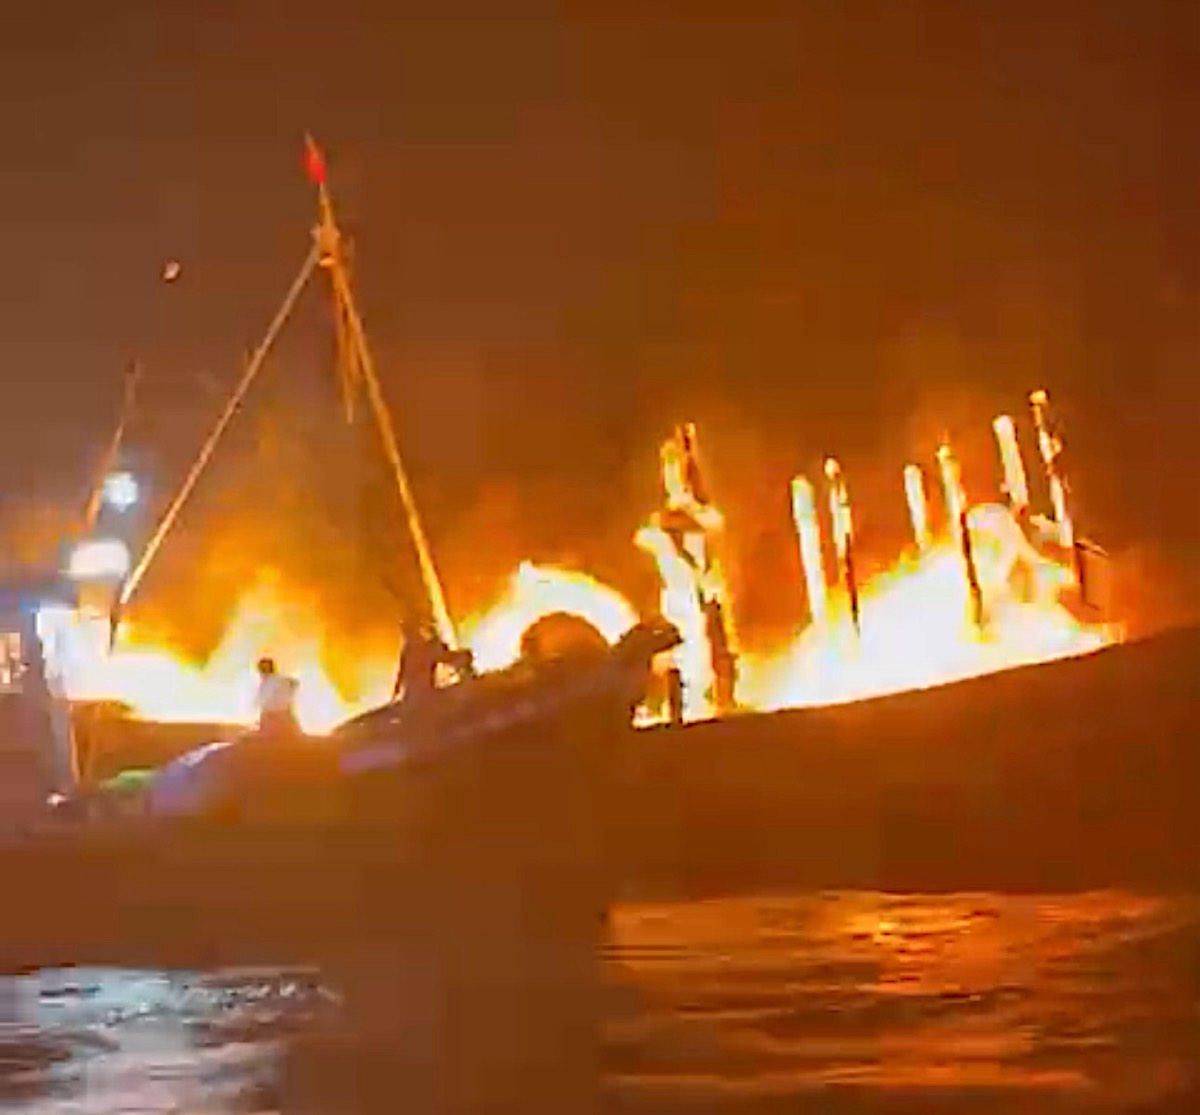 Lửa bốc cháy mạnh trên tàu cá. Ảnh: Biên phòng